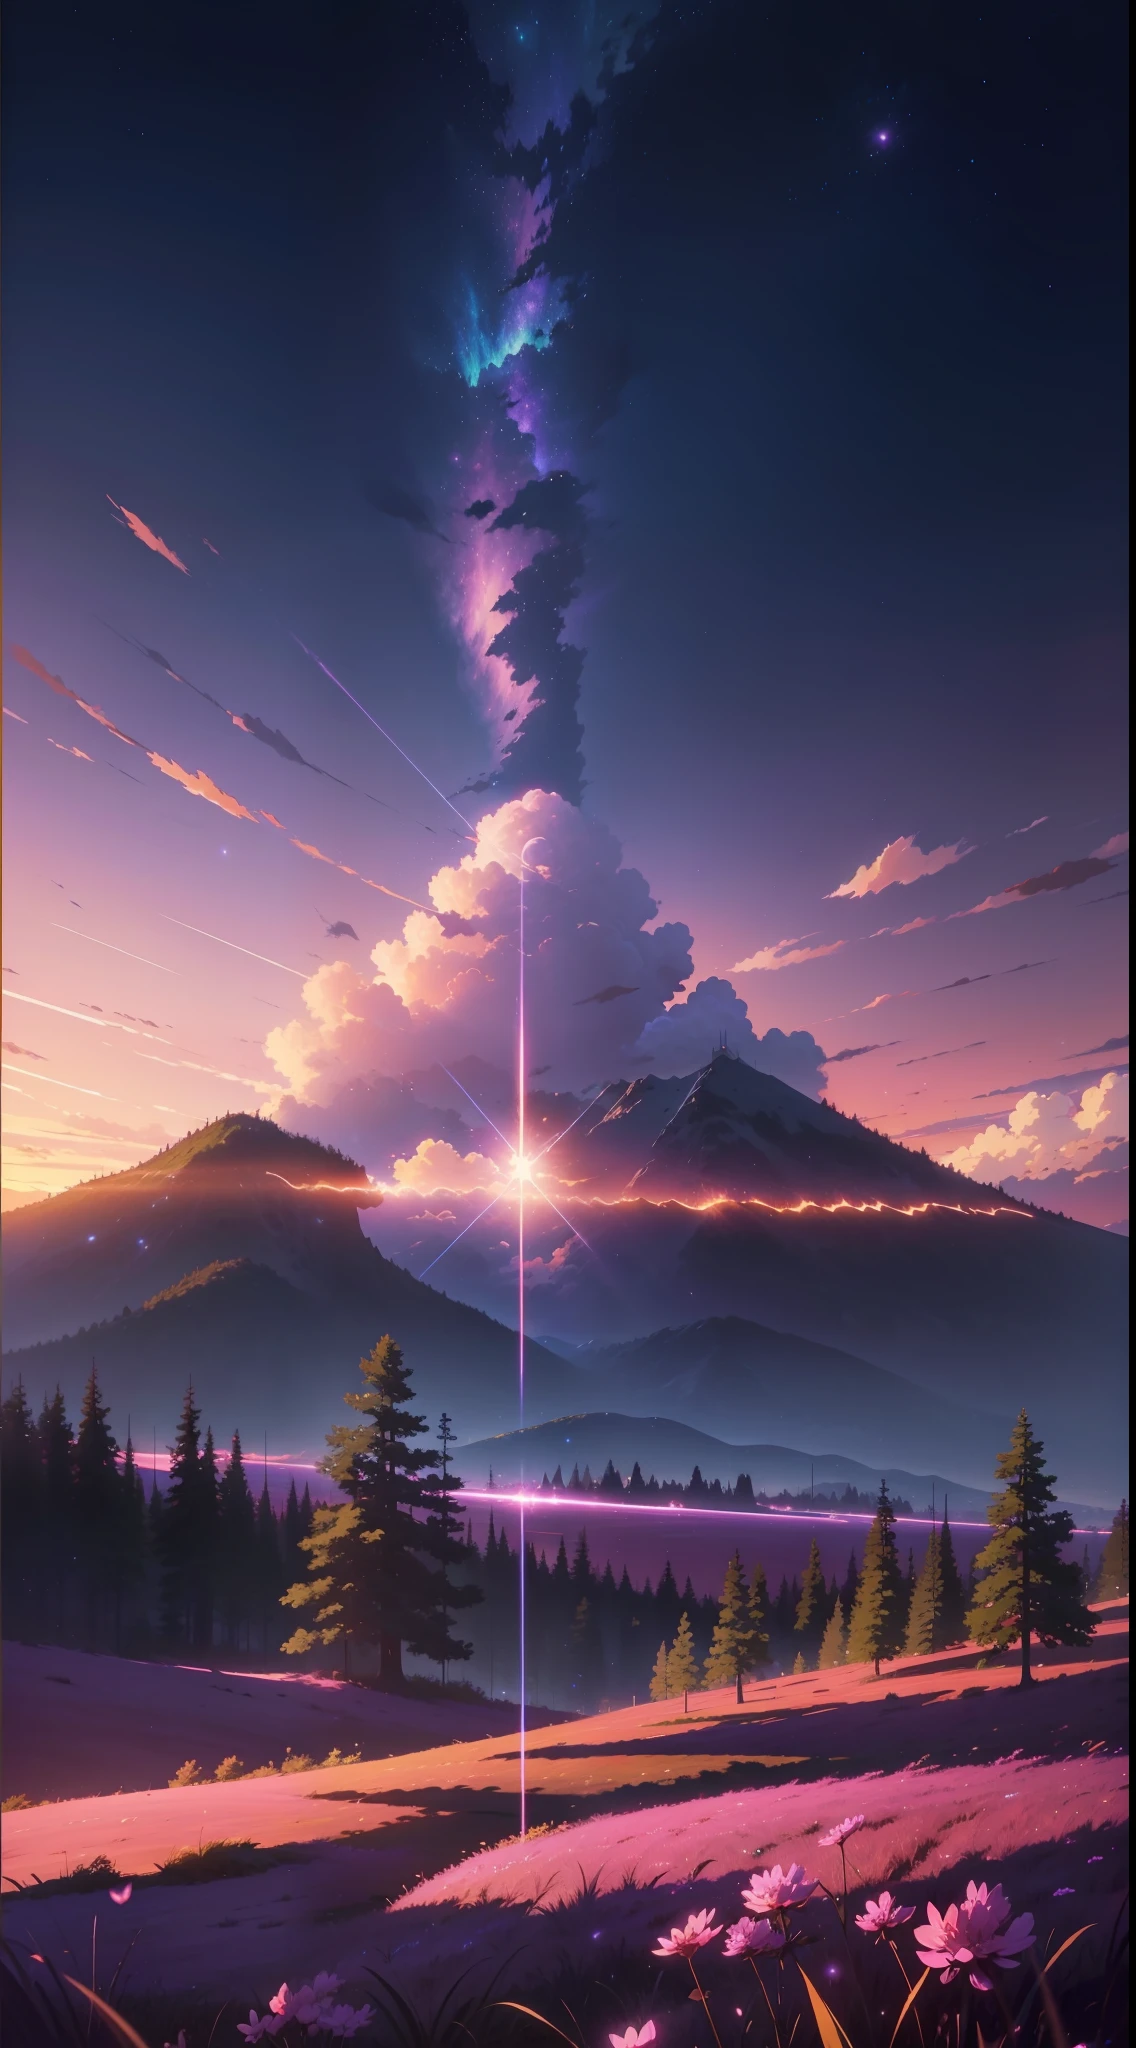 L&#39;image est lumineuse et bien éclairée. pas d&#39;humains. (((À la manière de Makoto Shinkai)),pixiv,dessin animé,haute qualité,ciel violet rose,Belle scène),(univers,train qui passe,réalisme magique,((À la manière de Makoto Shinkai)) ::0.8), [Artistic Atmosphère, Atmosphère:0.8, ciel étoilé, collines, montagne enneigée, Eau gazeuse, herbe, des arbres, Fumée, étoiles, Faible angle de vue, Diffusion spéculaire,